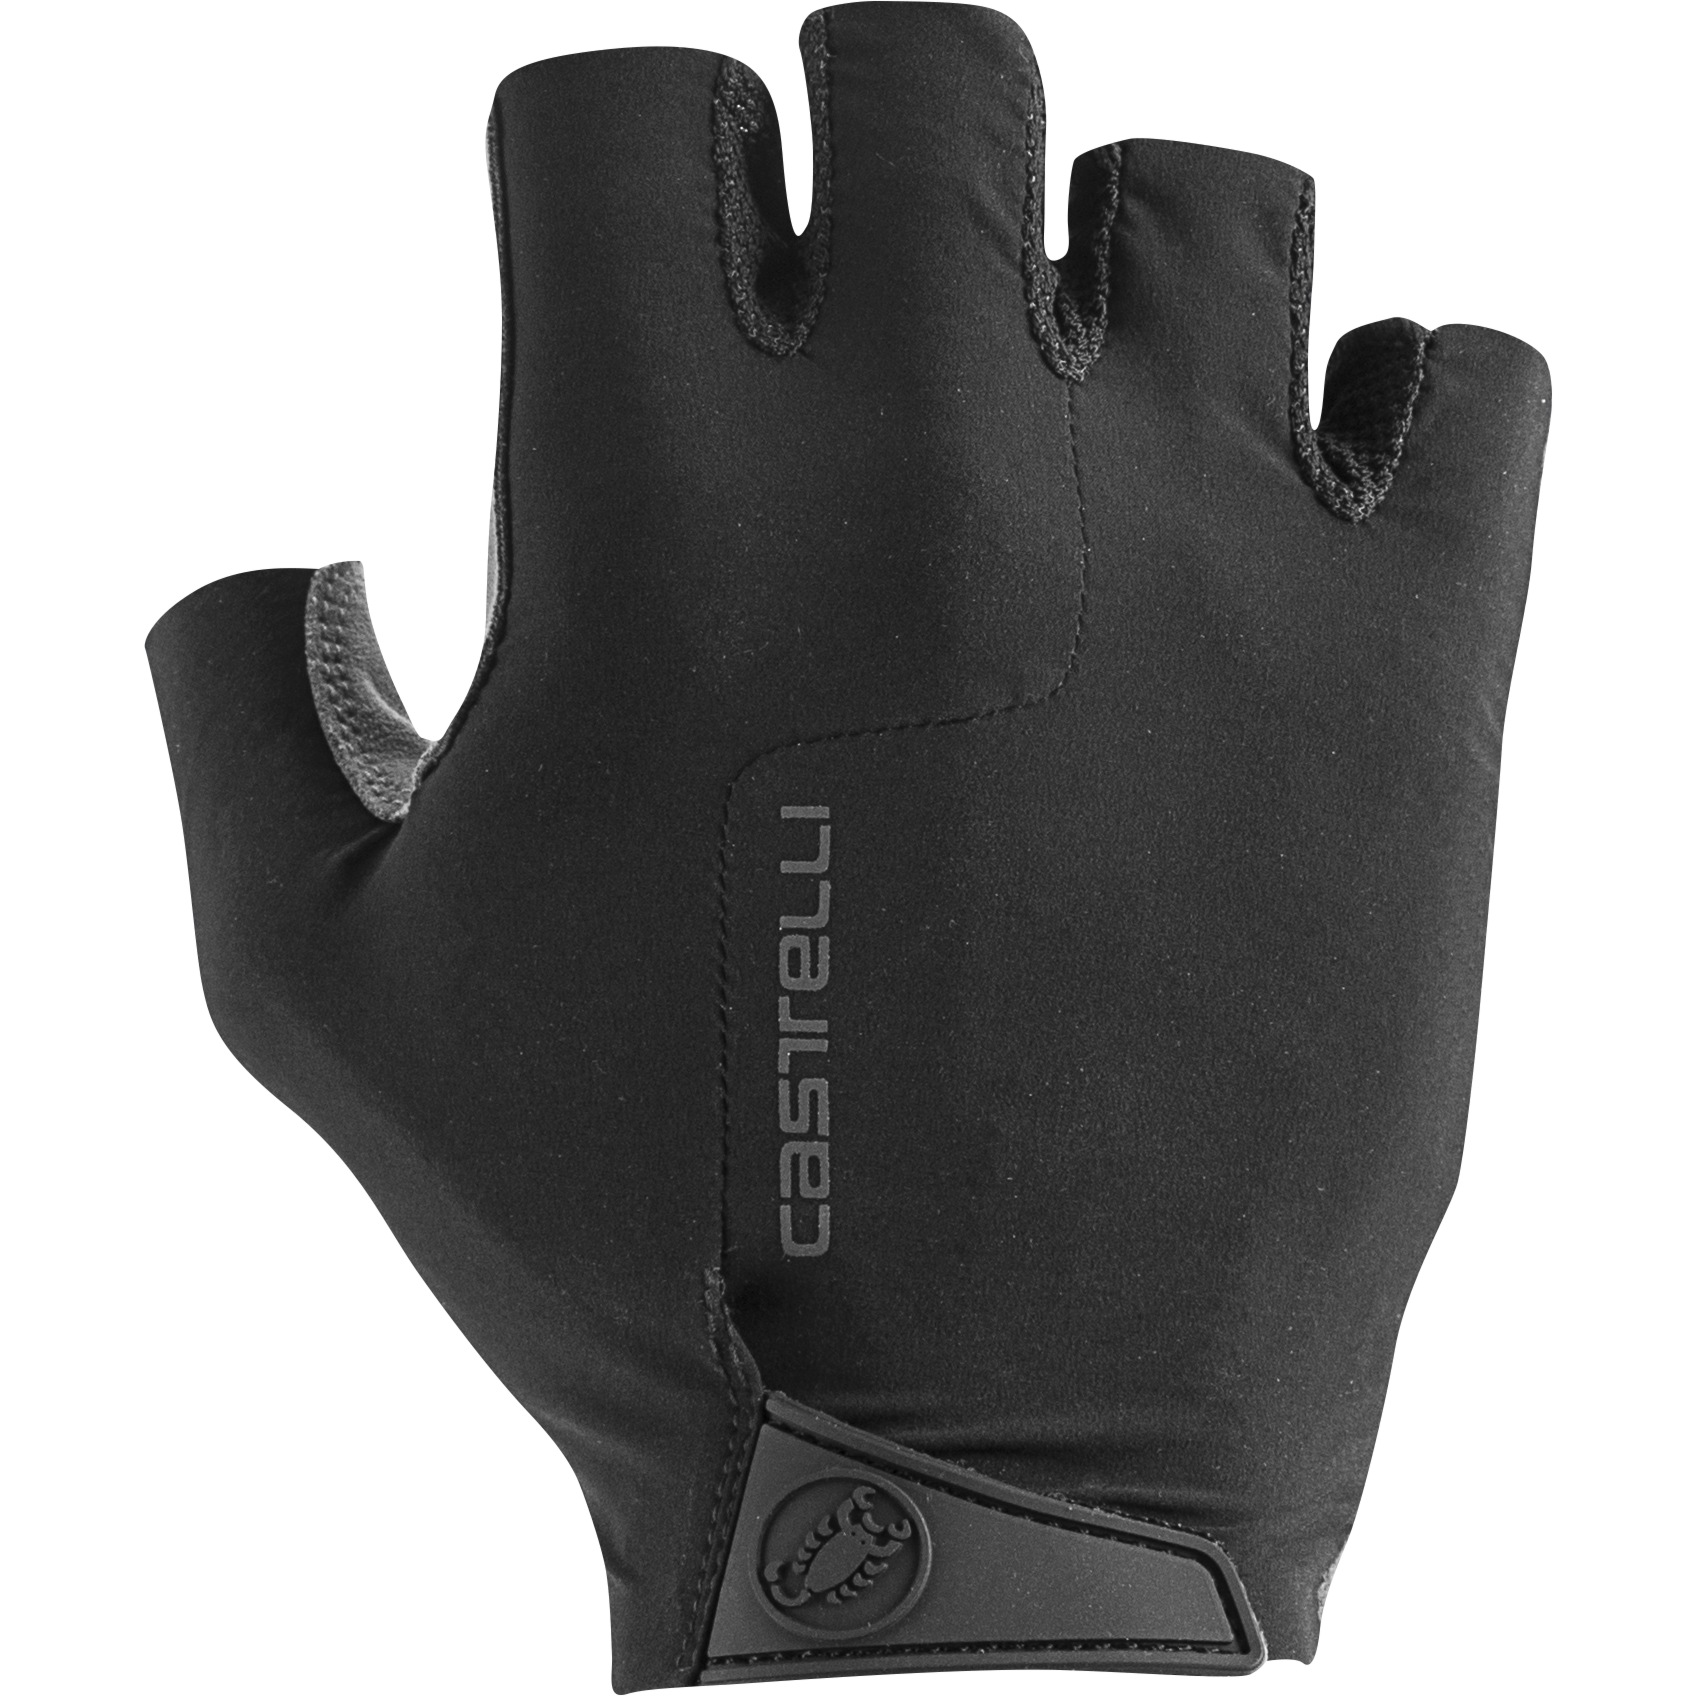 Productfoto van Castelli Premio Handschoenen met Korte Vingers - zwart 010